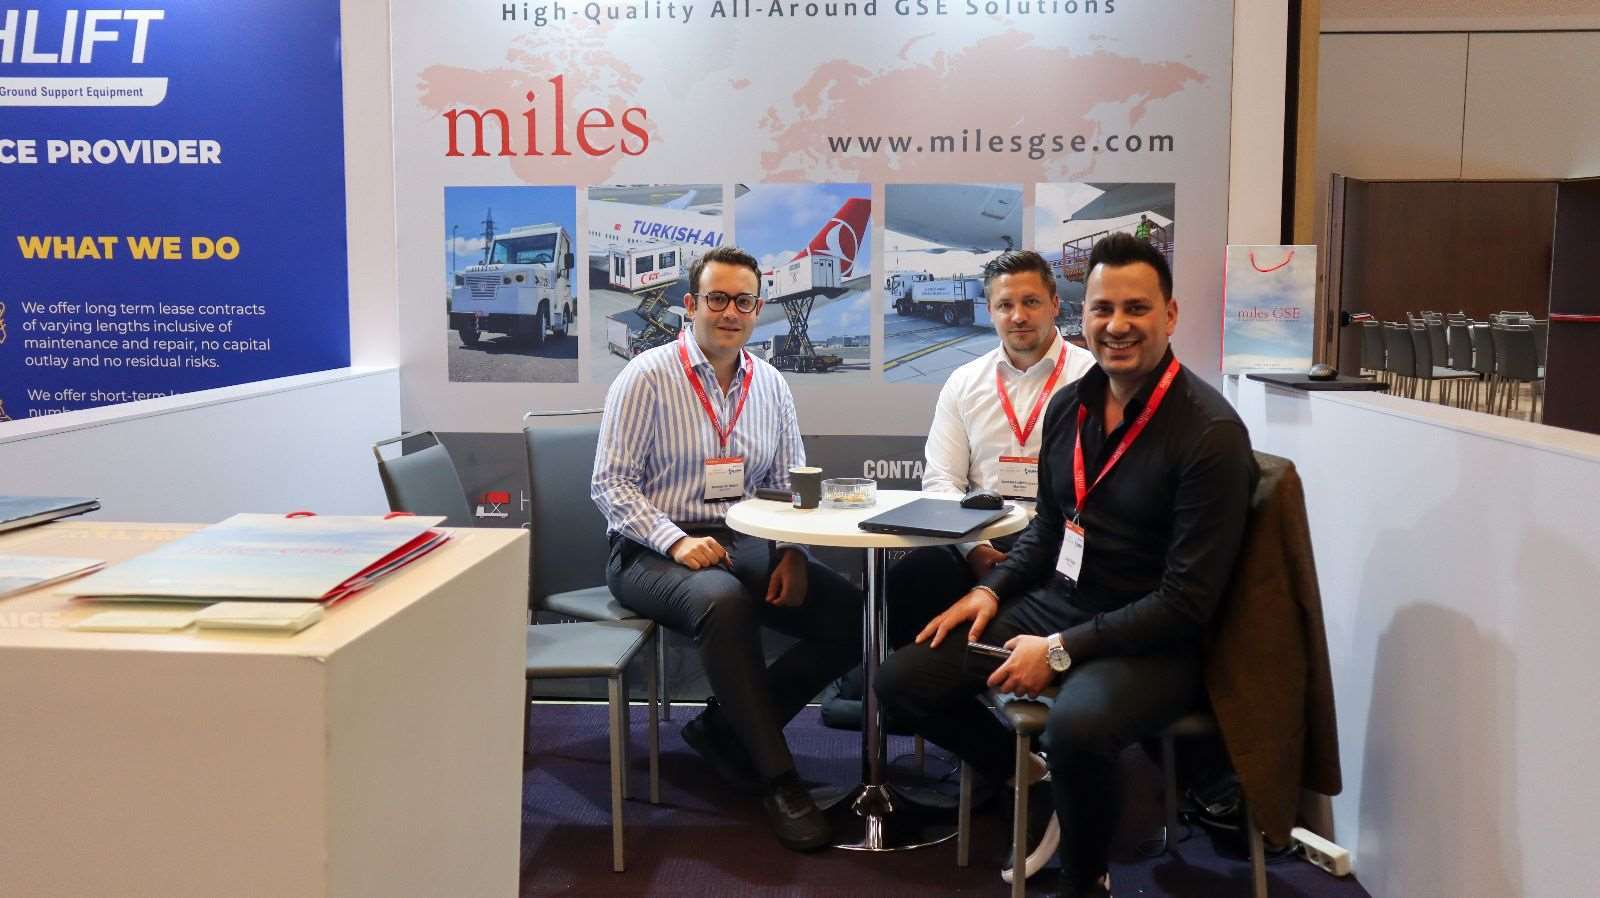 Miles GSE, Sevilla’daki GSE&Ramp-Ops konferansına katıldı., Miles GSE, Sevilla’da düzenlenen GSE&Ramp-Ops konferansına katıldı. Konferansta ana konu sürdürülebilirlik ve verimlilik oldu.